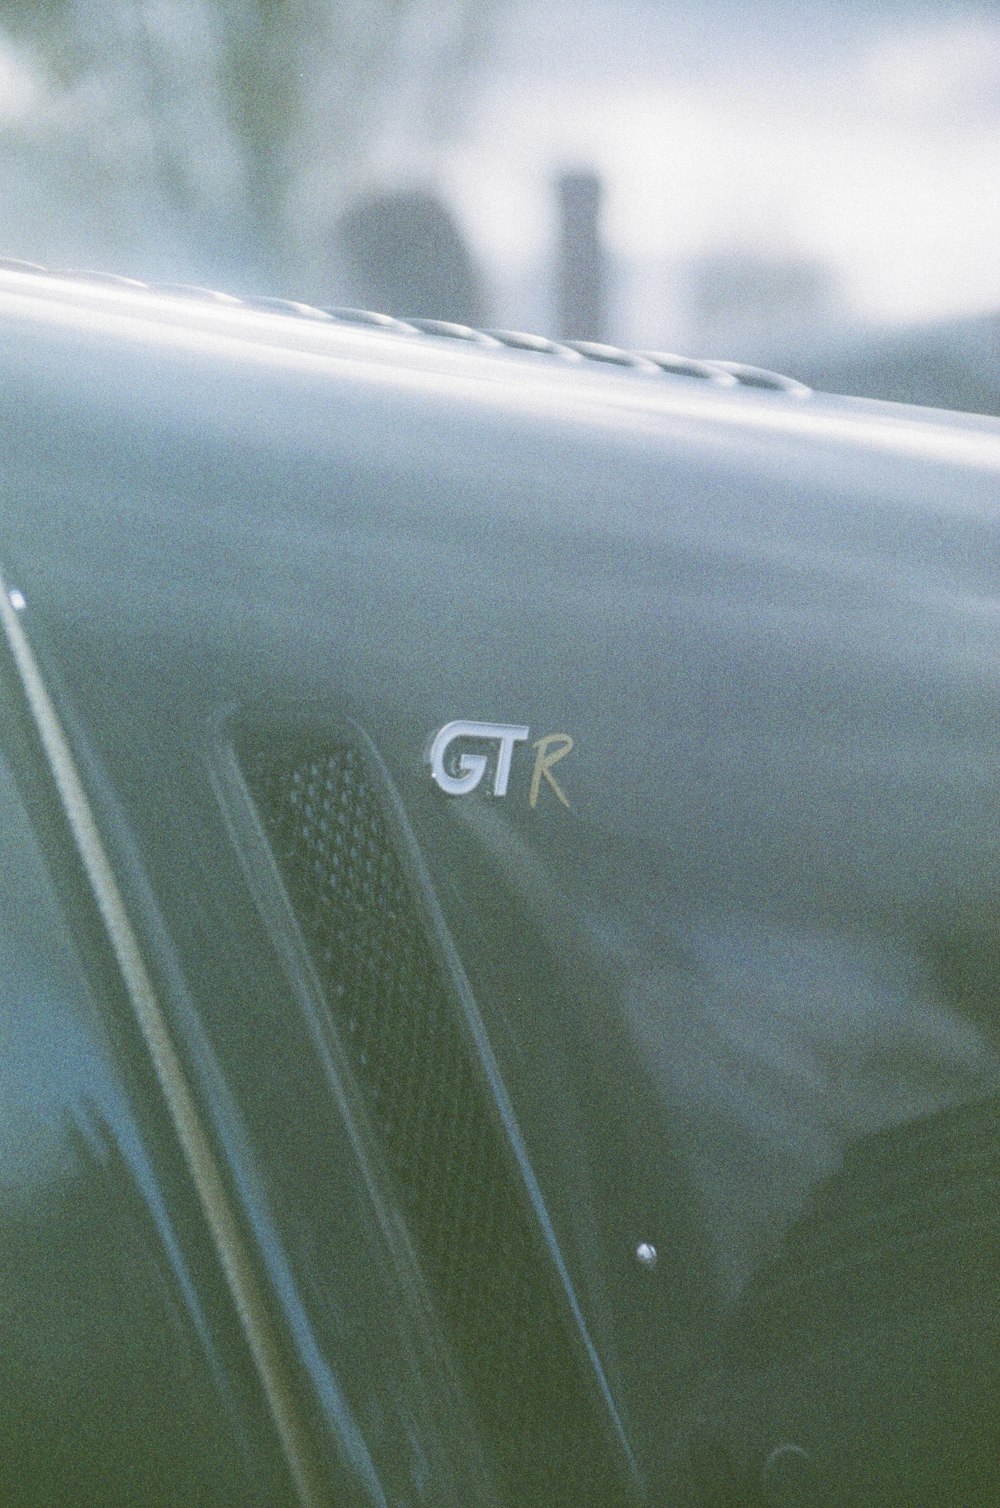 Un primo piano di una portiera dell'auto con la parola GTR su di essa